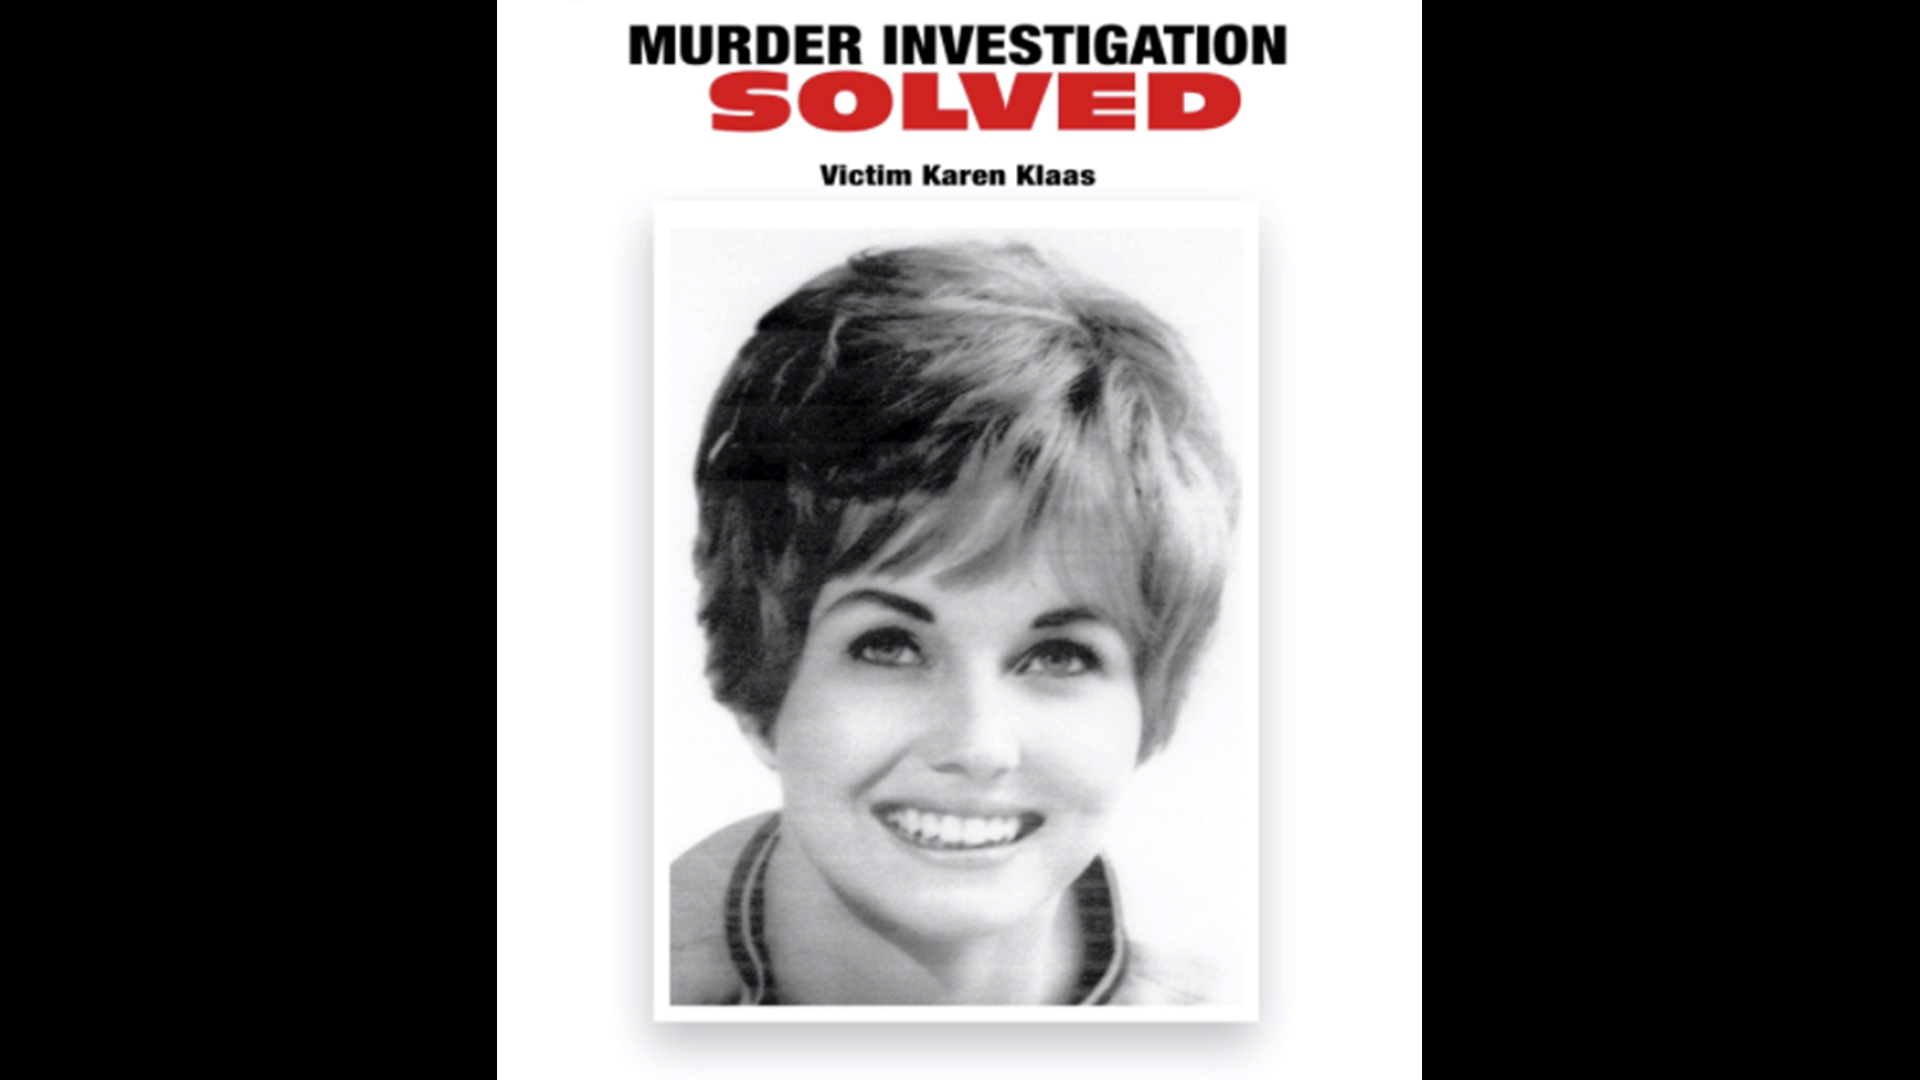 Killer Idd In 1976 Murder Of Karen Klaas Ex Wife Of Righteous Brothers Singer Authorities 7168